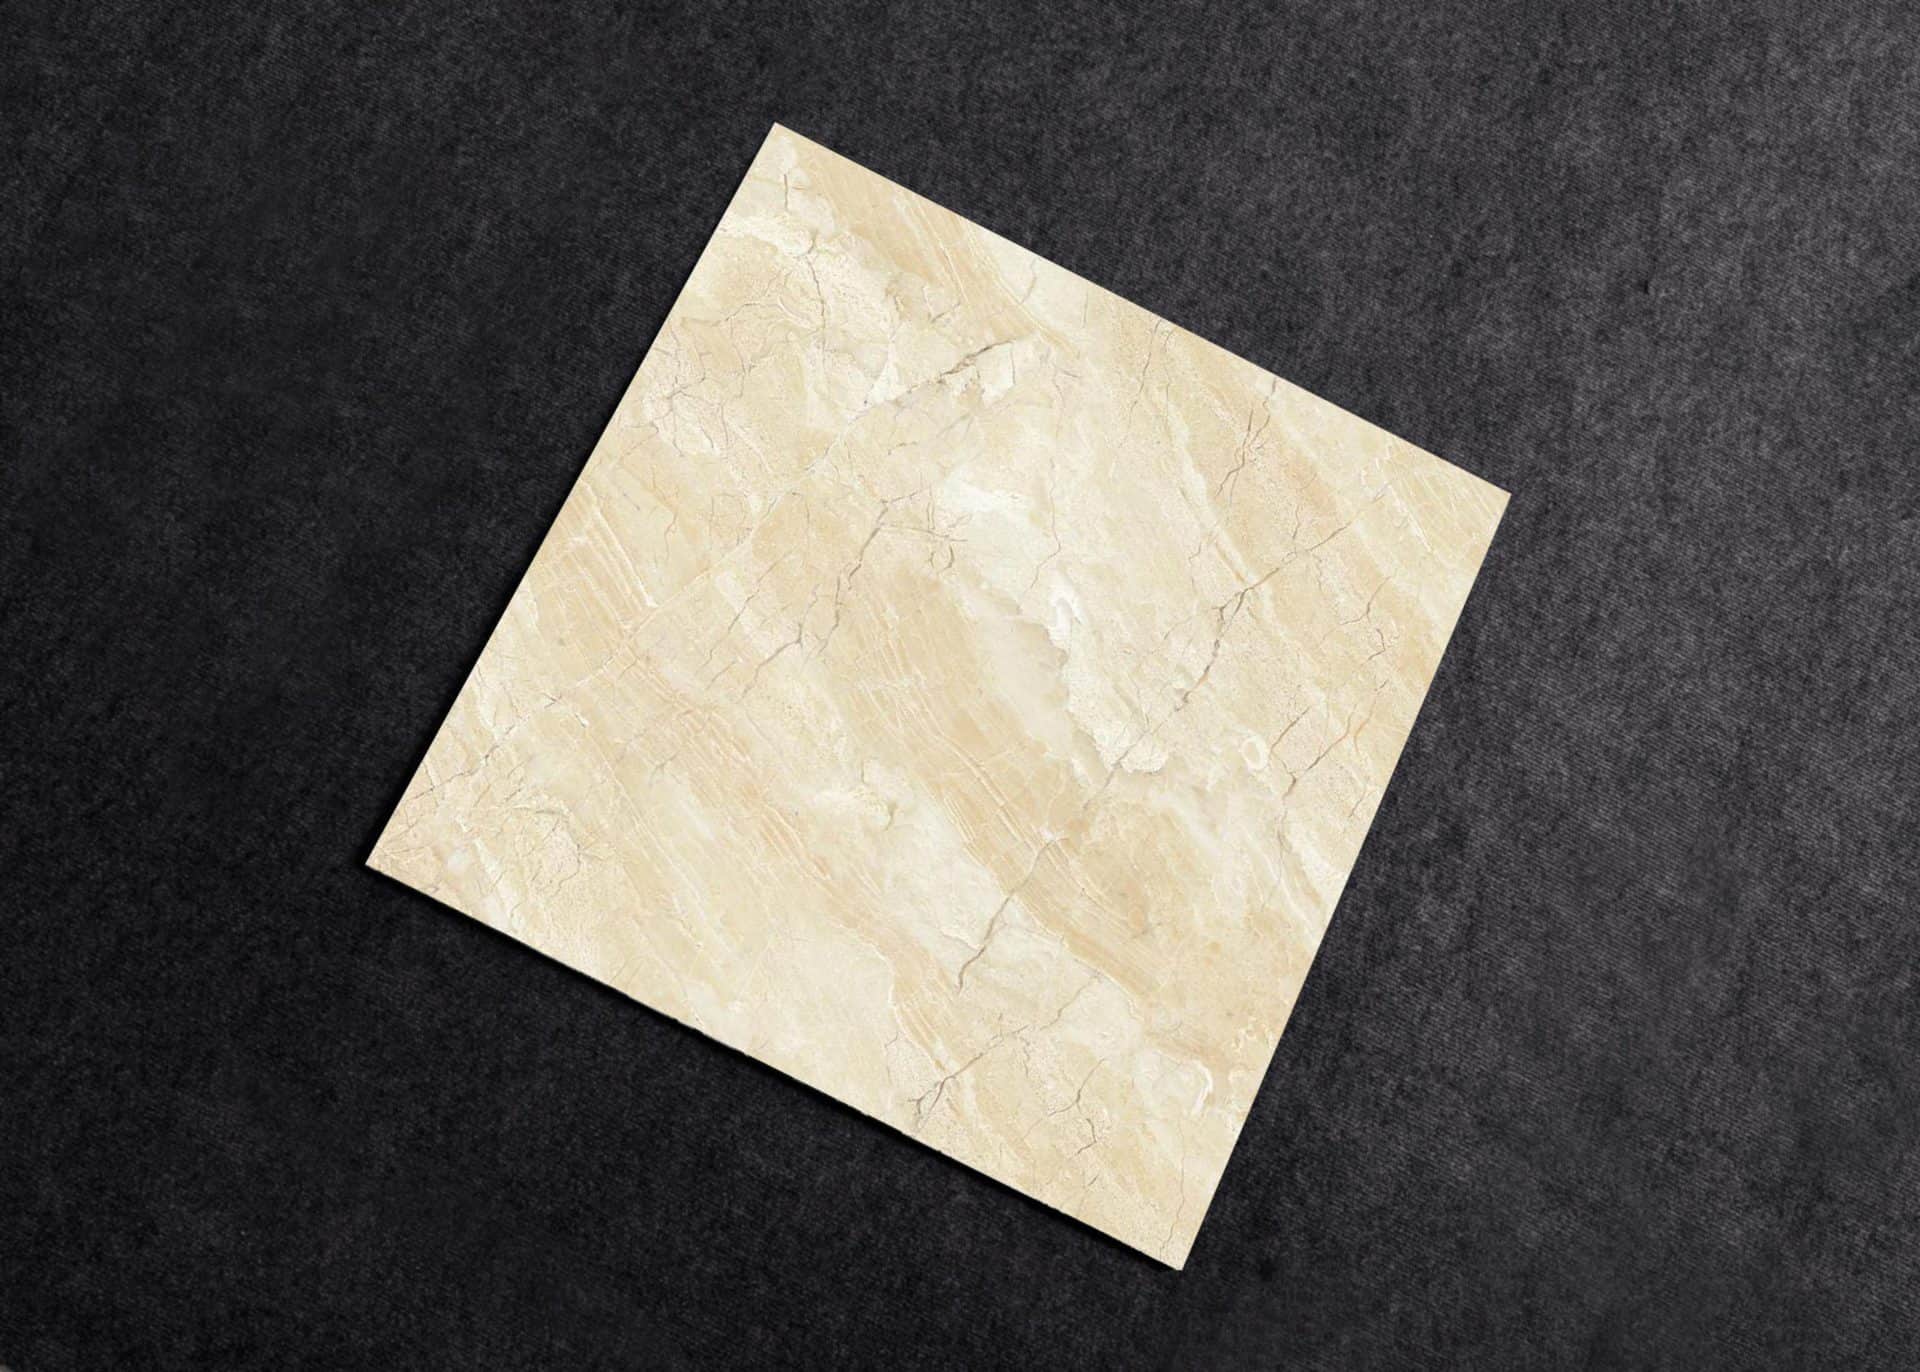 Mẫu gạch giả đá lát nền phòng ngủ CMC mã LX8824 tông màu vàng nhẹ nhàng kết hợp cùng những đường vân đá marble sang trọng